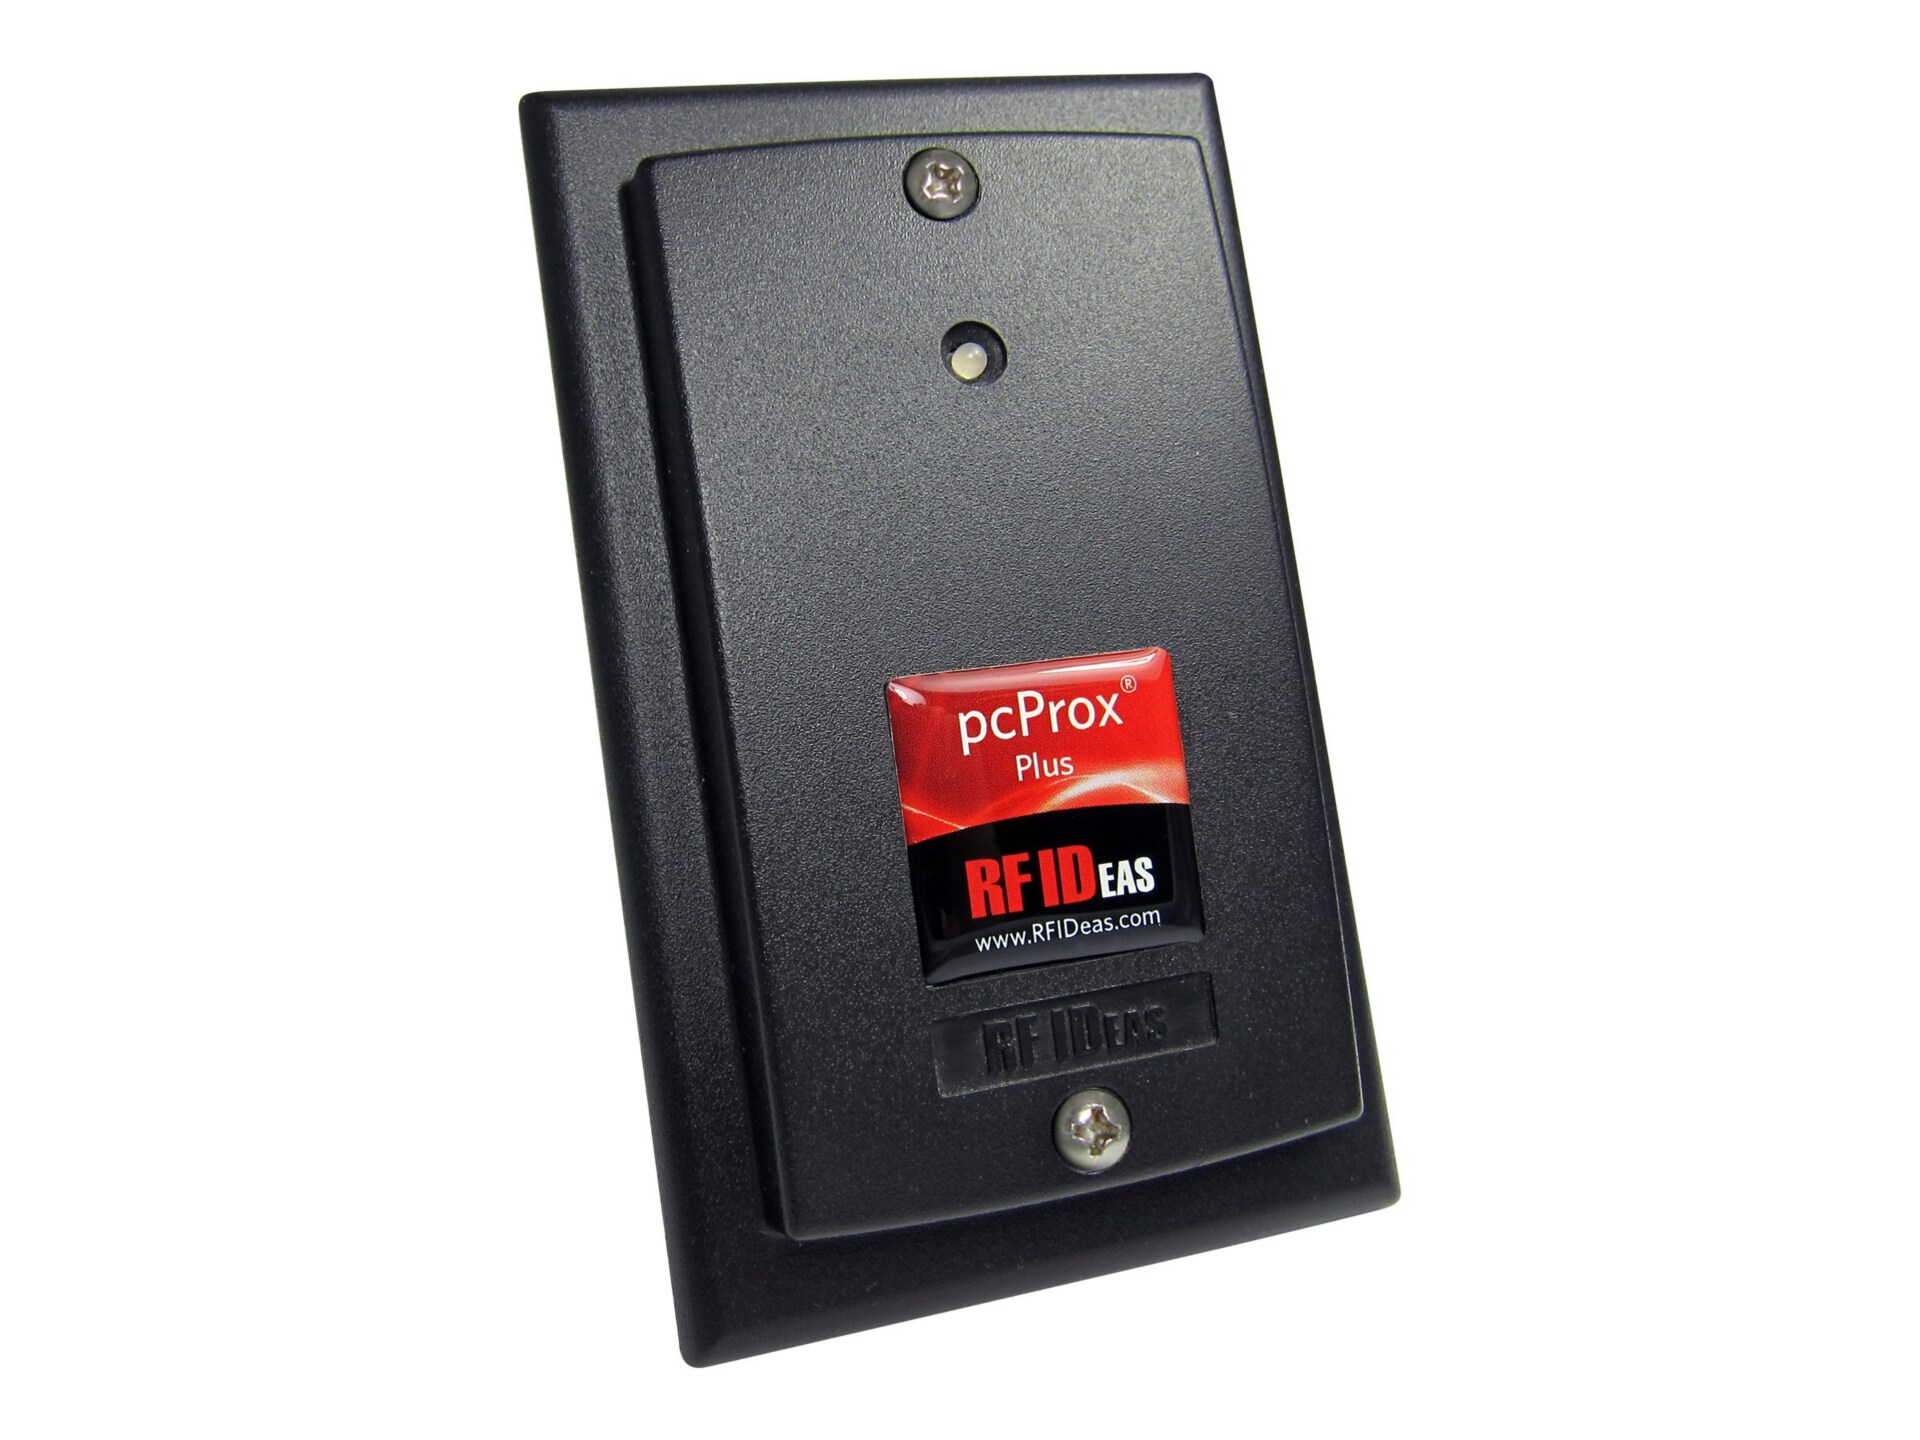 rf IDEAS WAVE ID Plus Keystroke HID iCLASS SE Black Surface Mount Reader - lecteur de proximité RF - USB